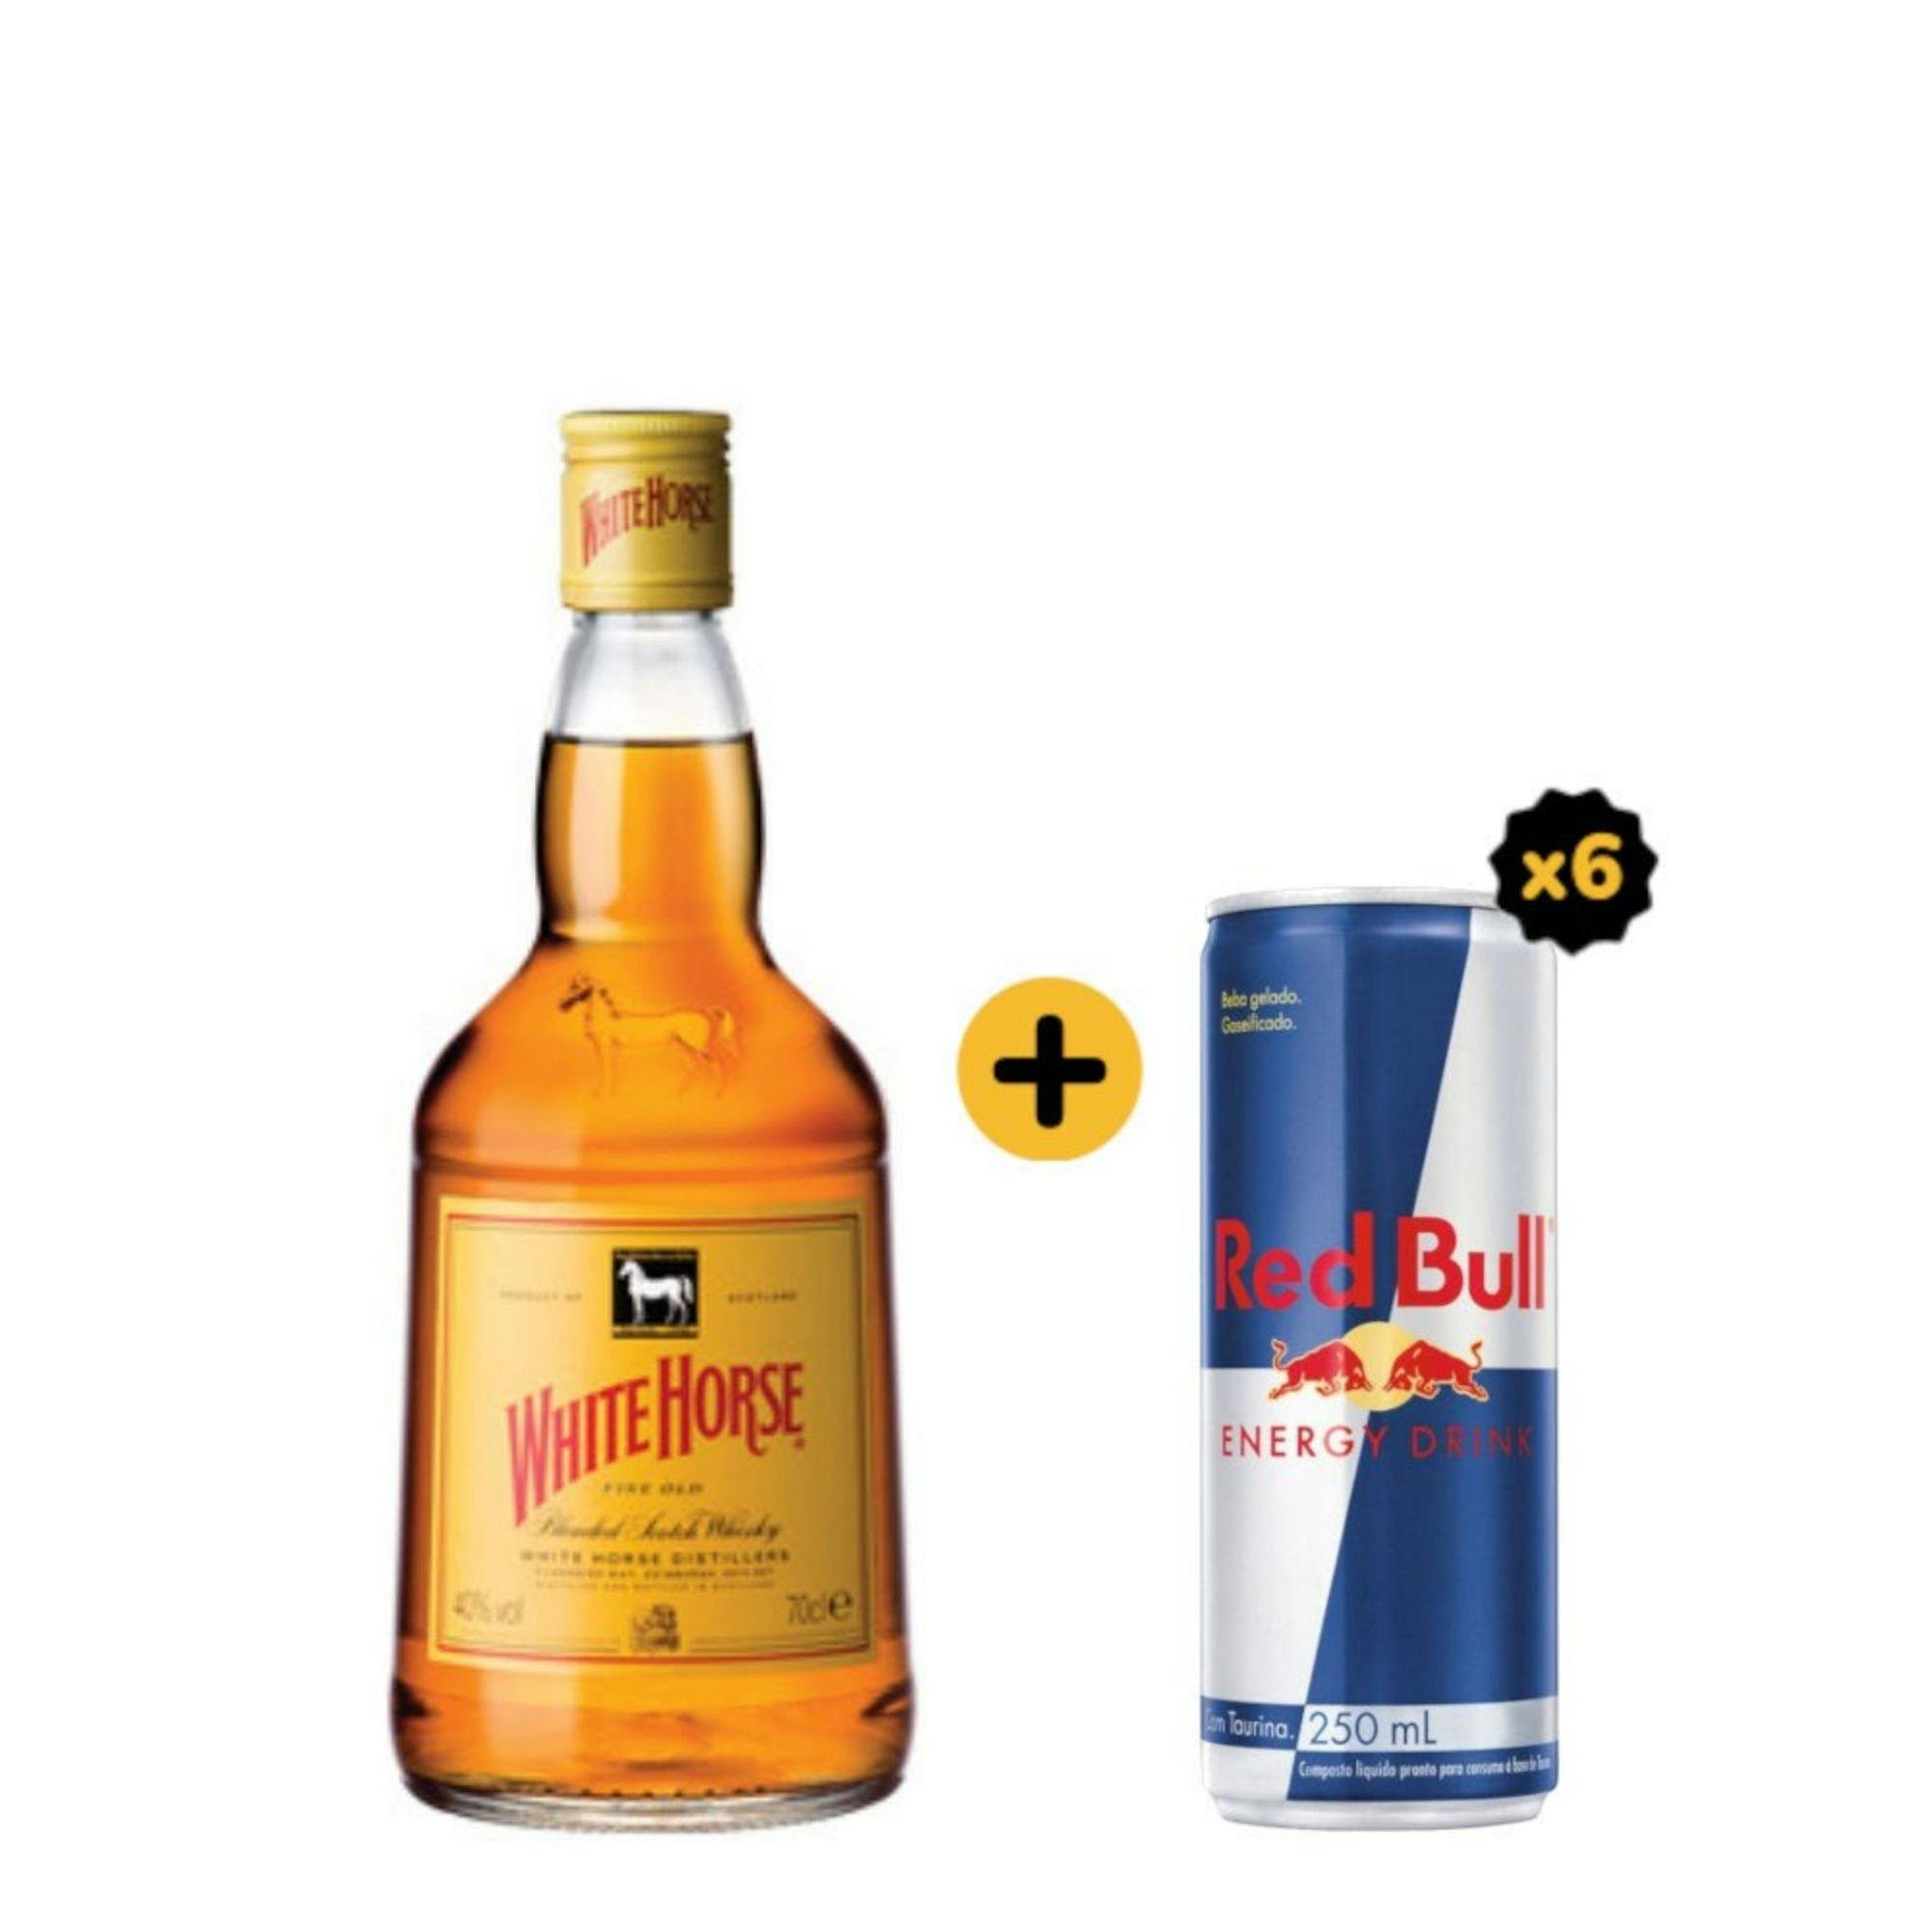 Combo White Horse + Red Bull (1 Whisky White Horse 1L + 6 Red Bull Energy Drink 250ml)